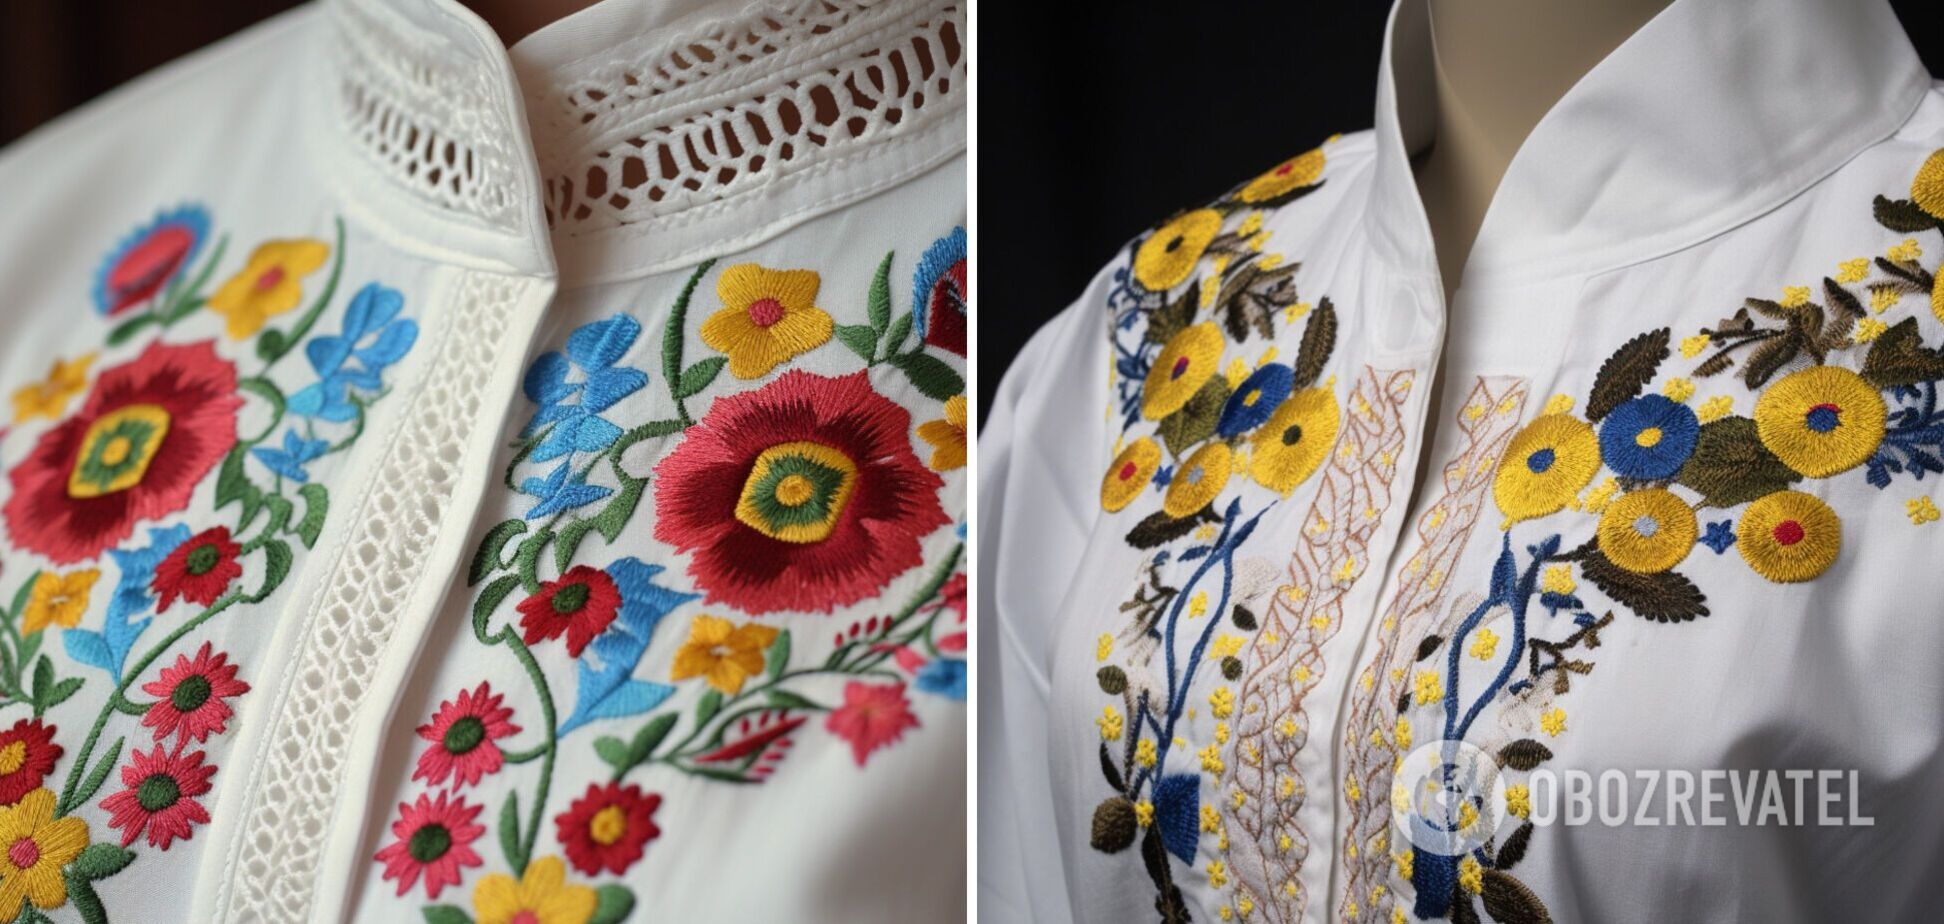 День вишиванки: що означають різні кольори і символи на традиційному одязі українців